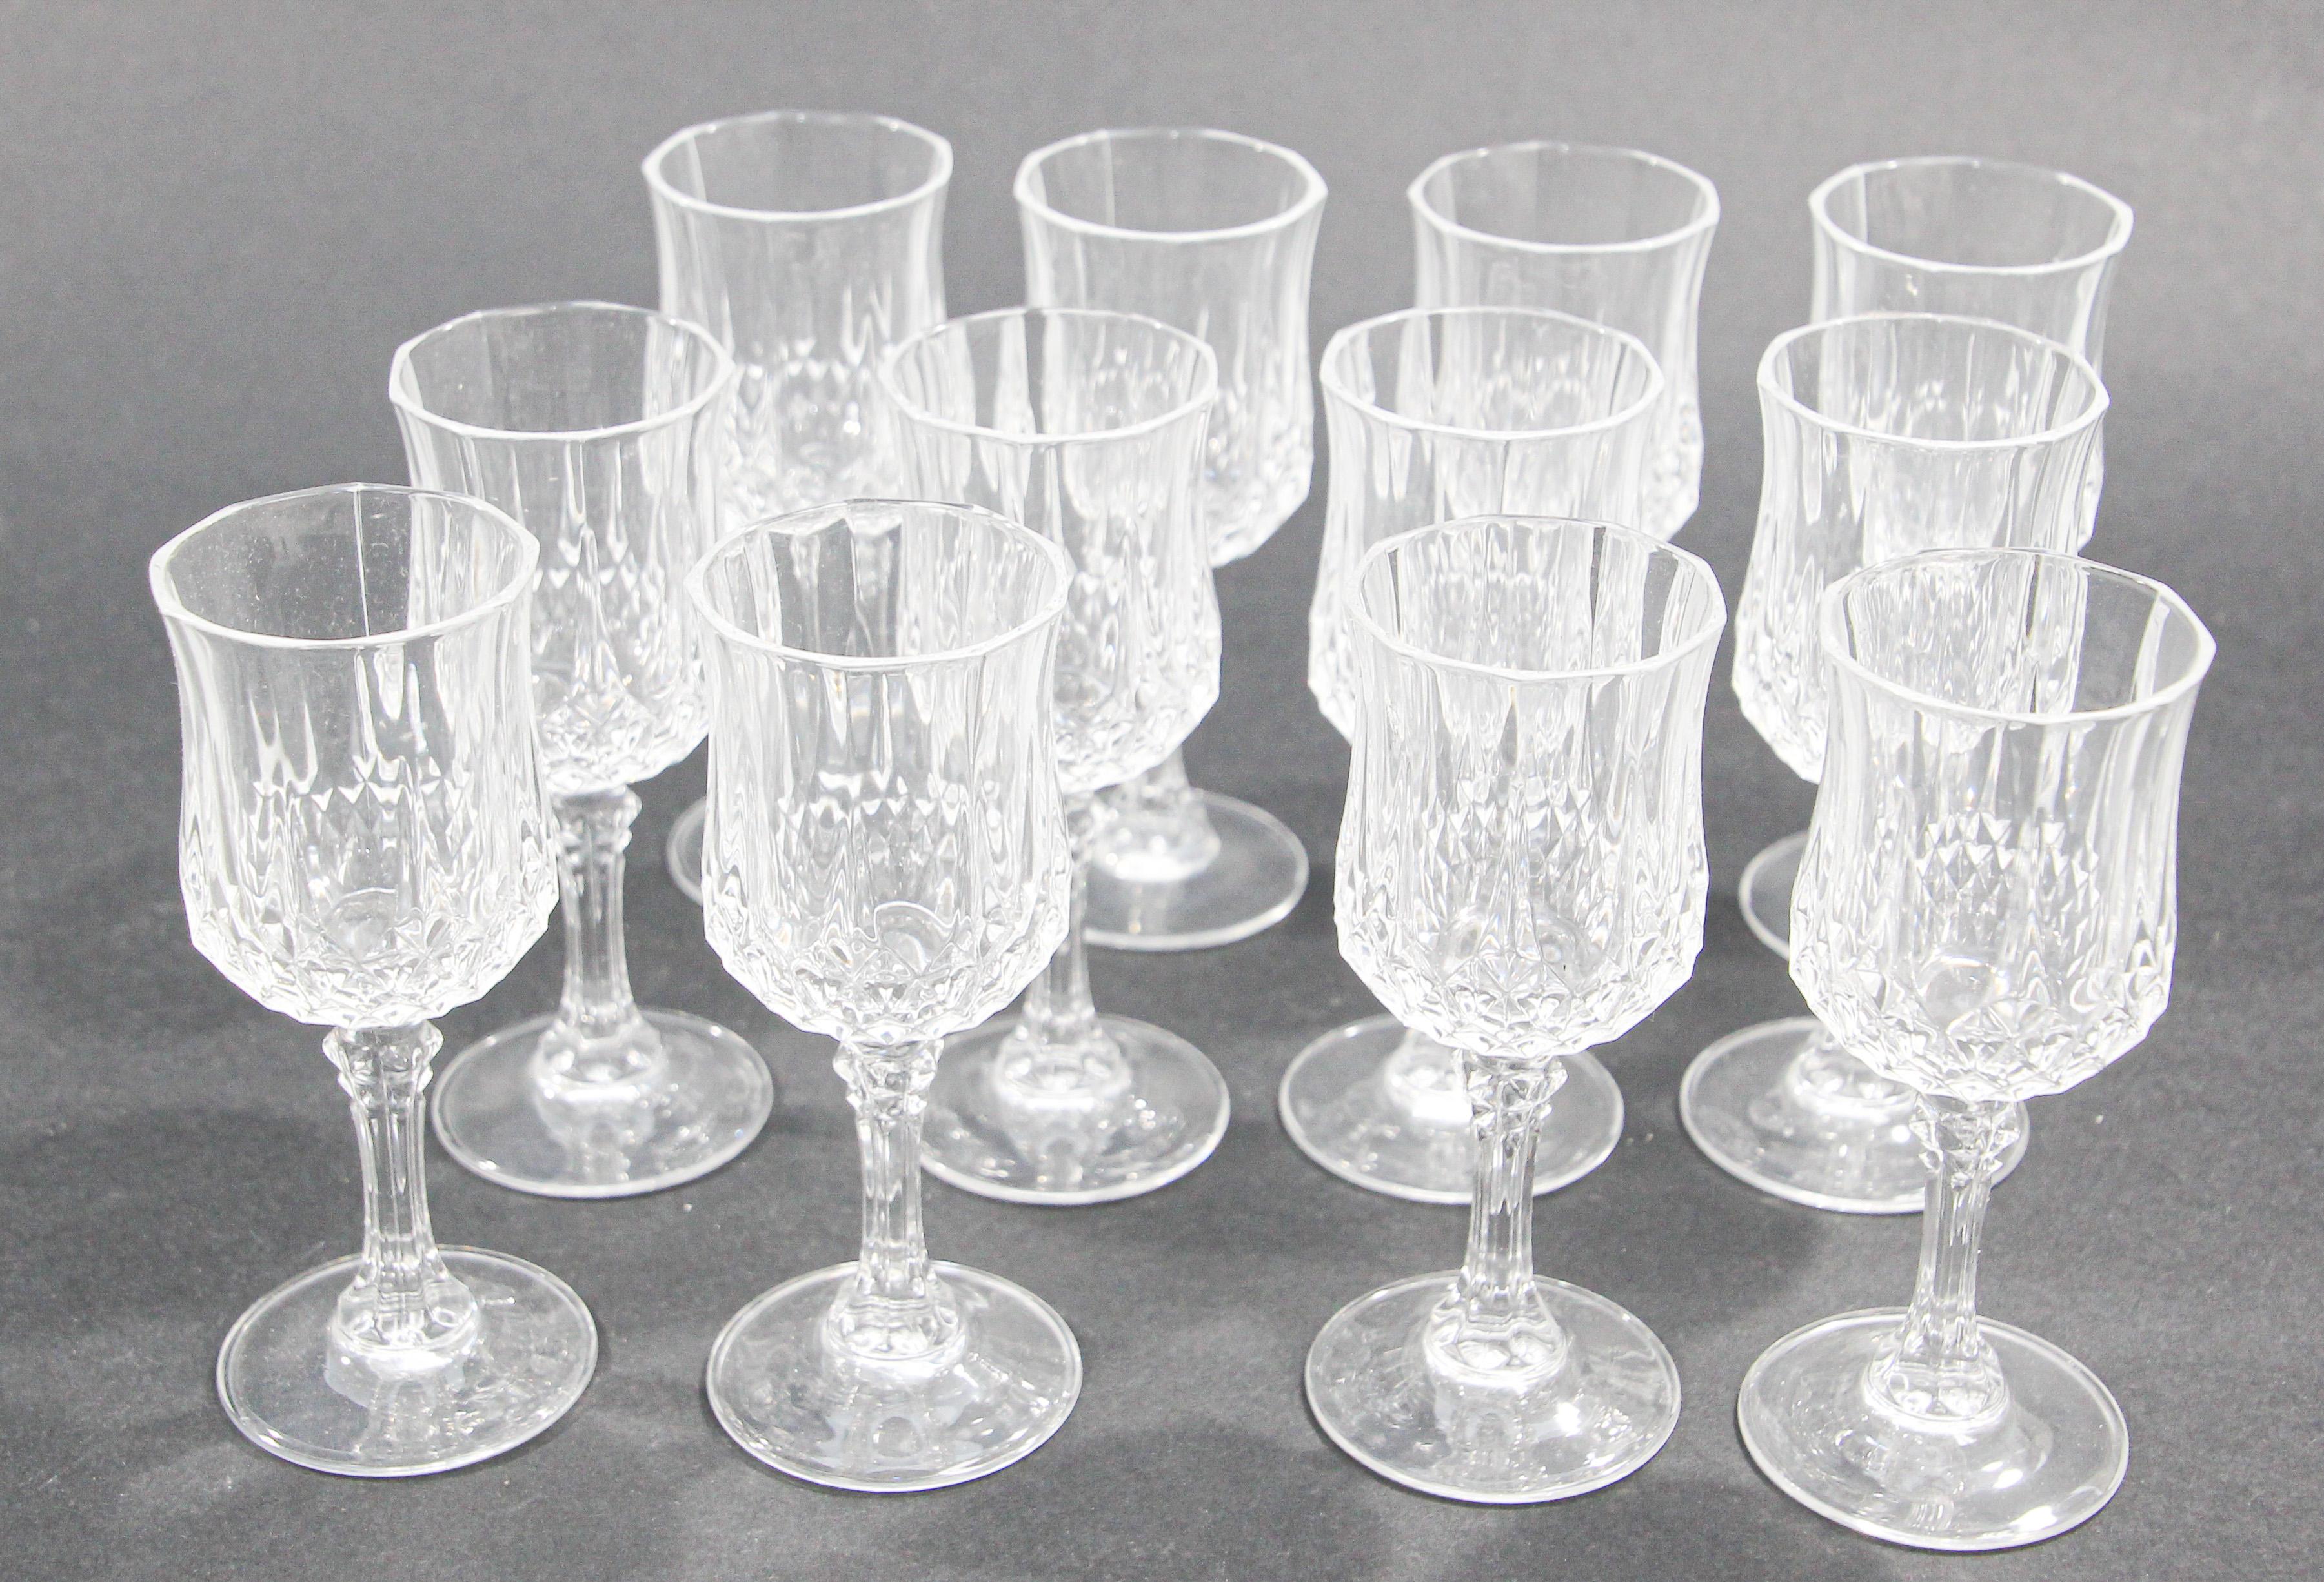 Vintage Cristal D Arques - 7 For Sale on 1stDibs | cristal d'arques  vintage, how much is cristal d'arques worth, vintage cristal d'arques  glasses